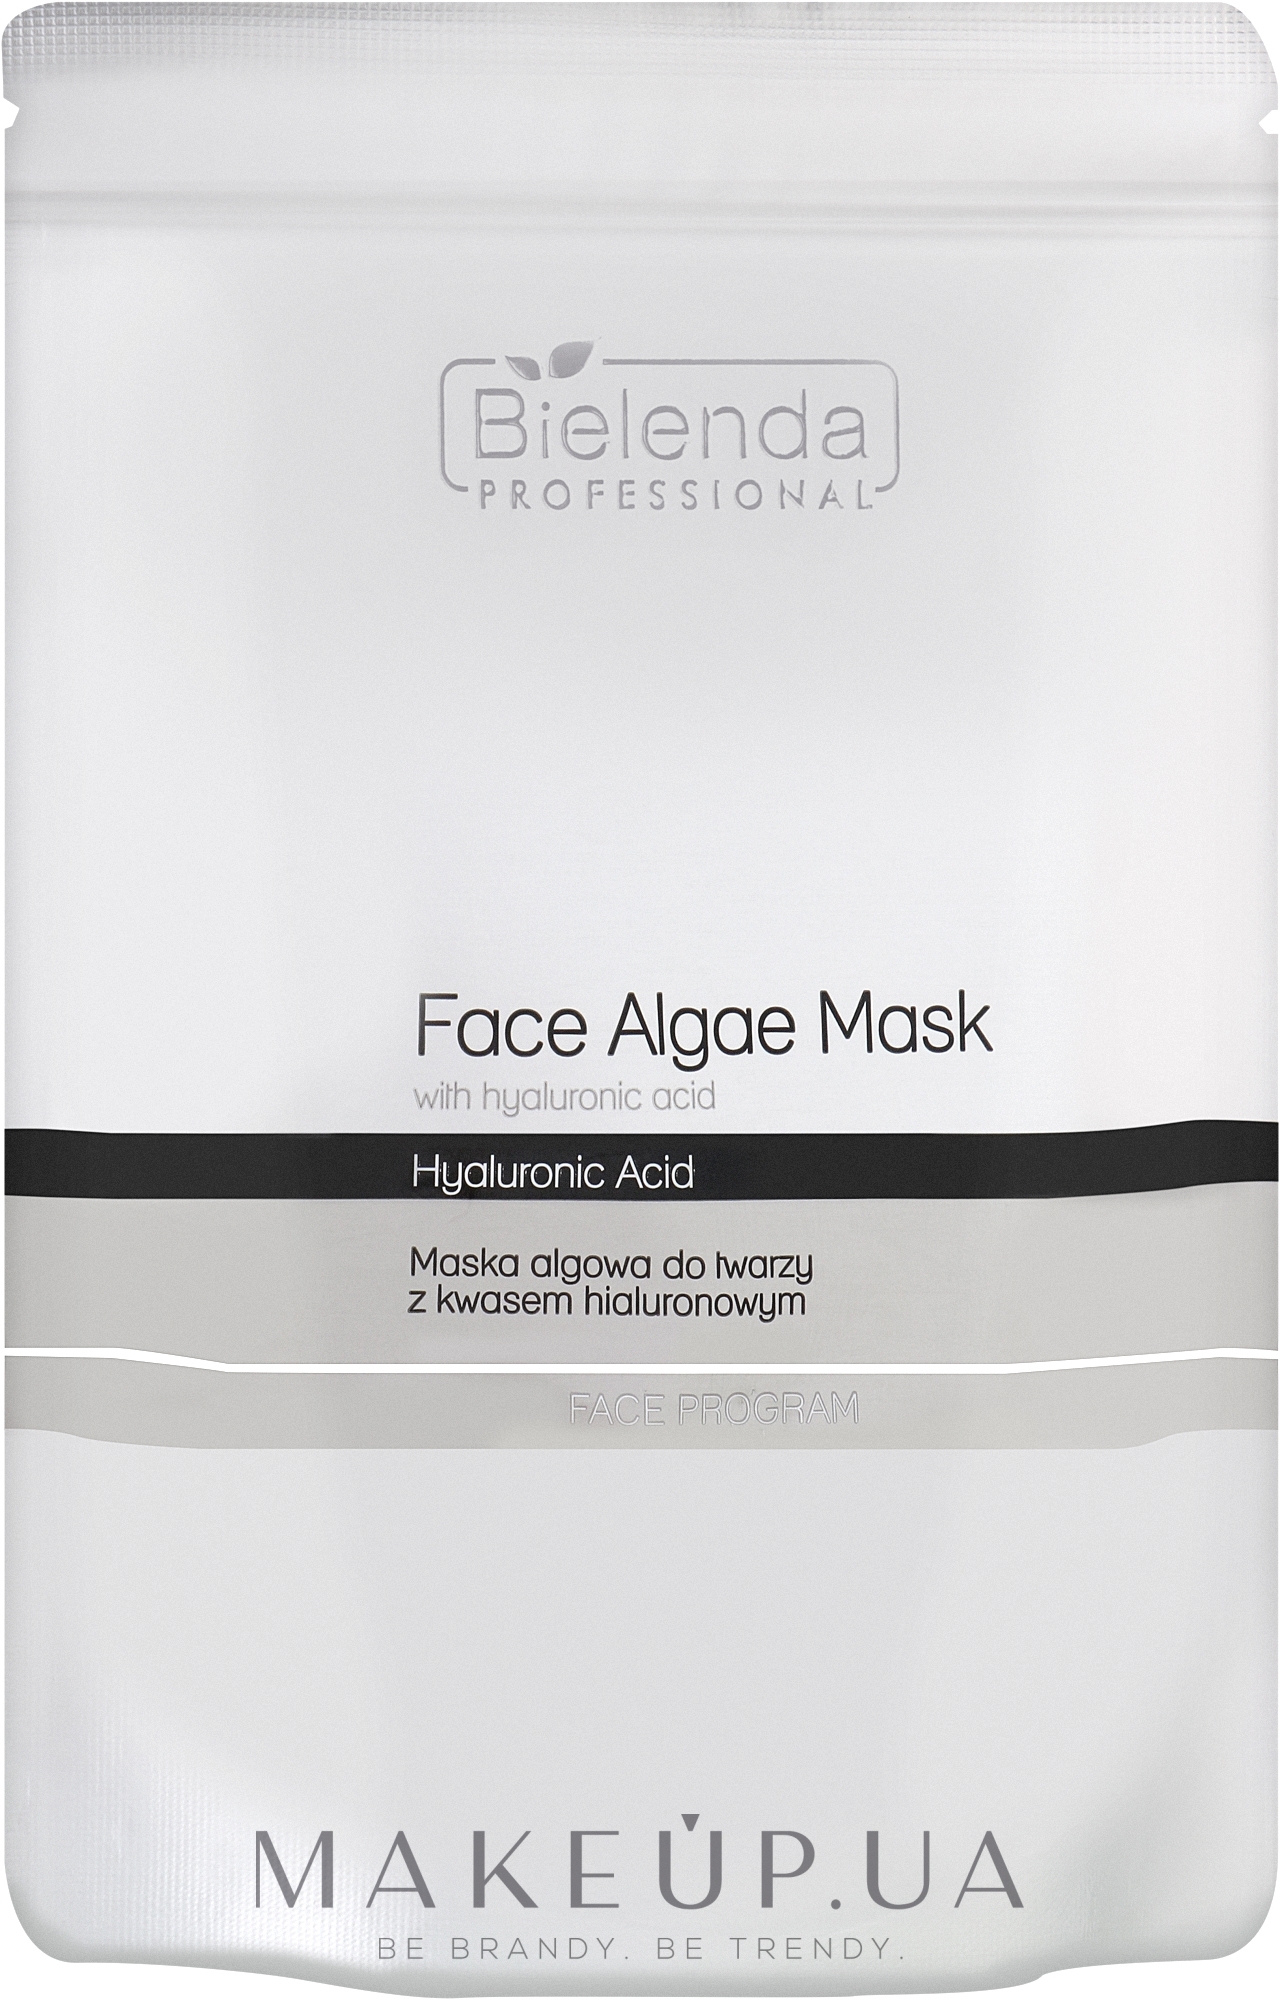 Альгінатна маска з гіалуроновою кислотою для обличчя - Bielenda Professional Face Algae Mask with Hyaluronic Acid (запасний блок)  — фото 190g